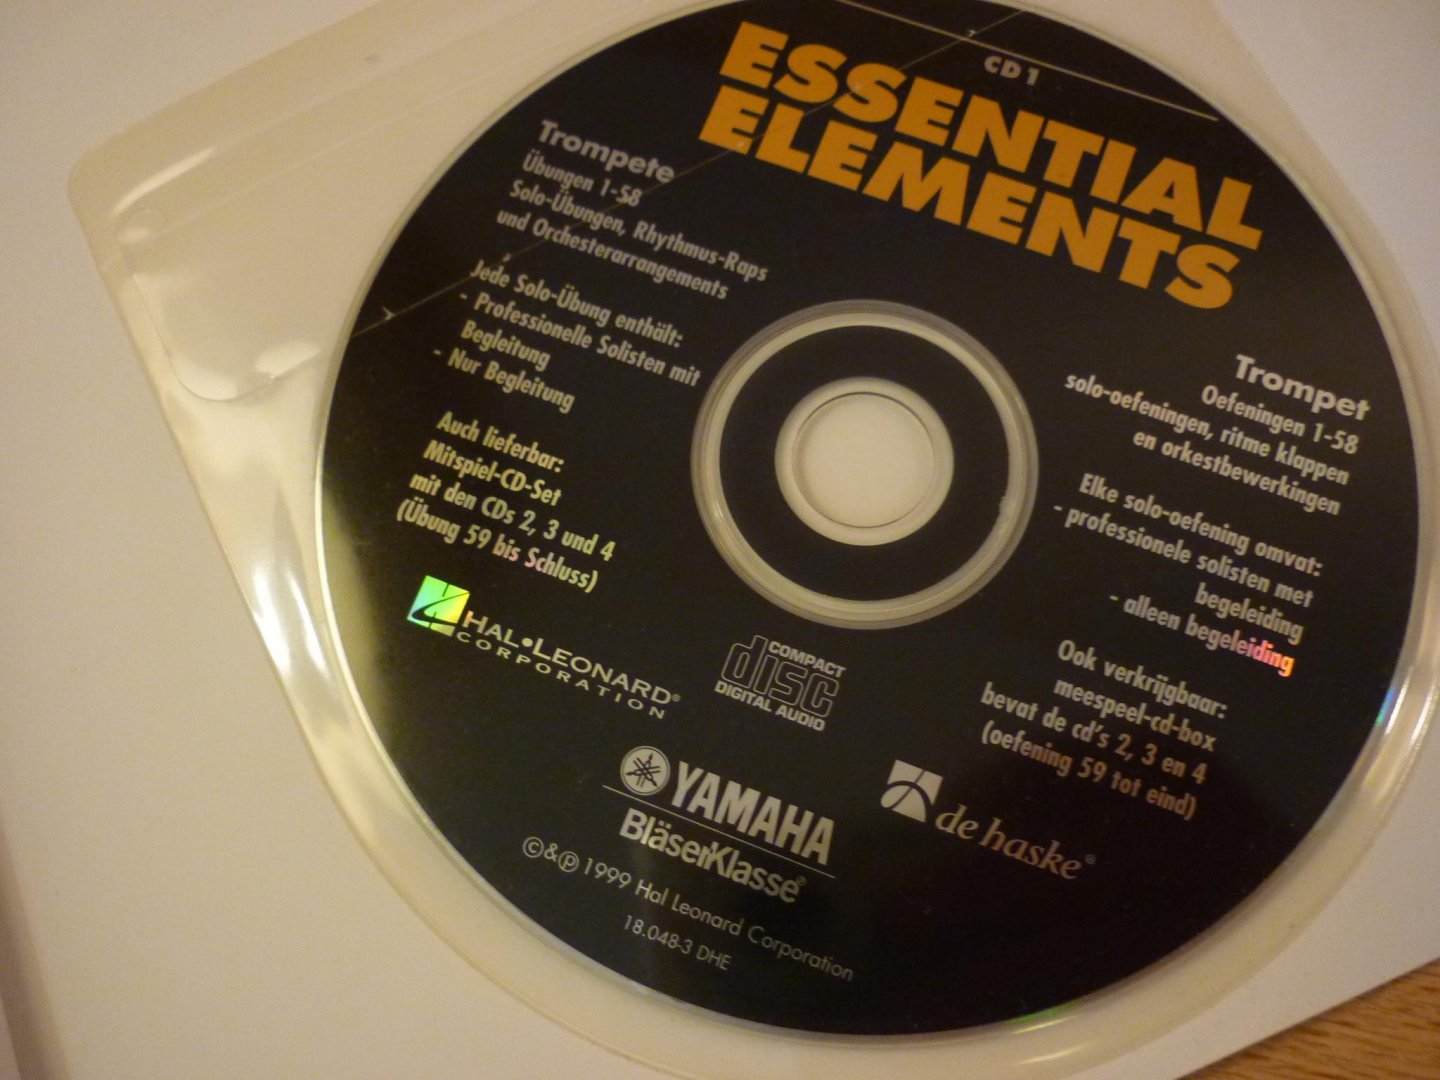 - - Essential Elements (NL); Complete methode voor klassikaal en groepsonderwijs + CD